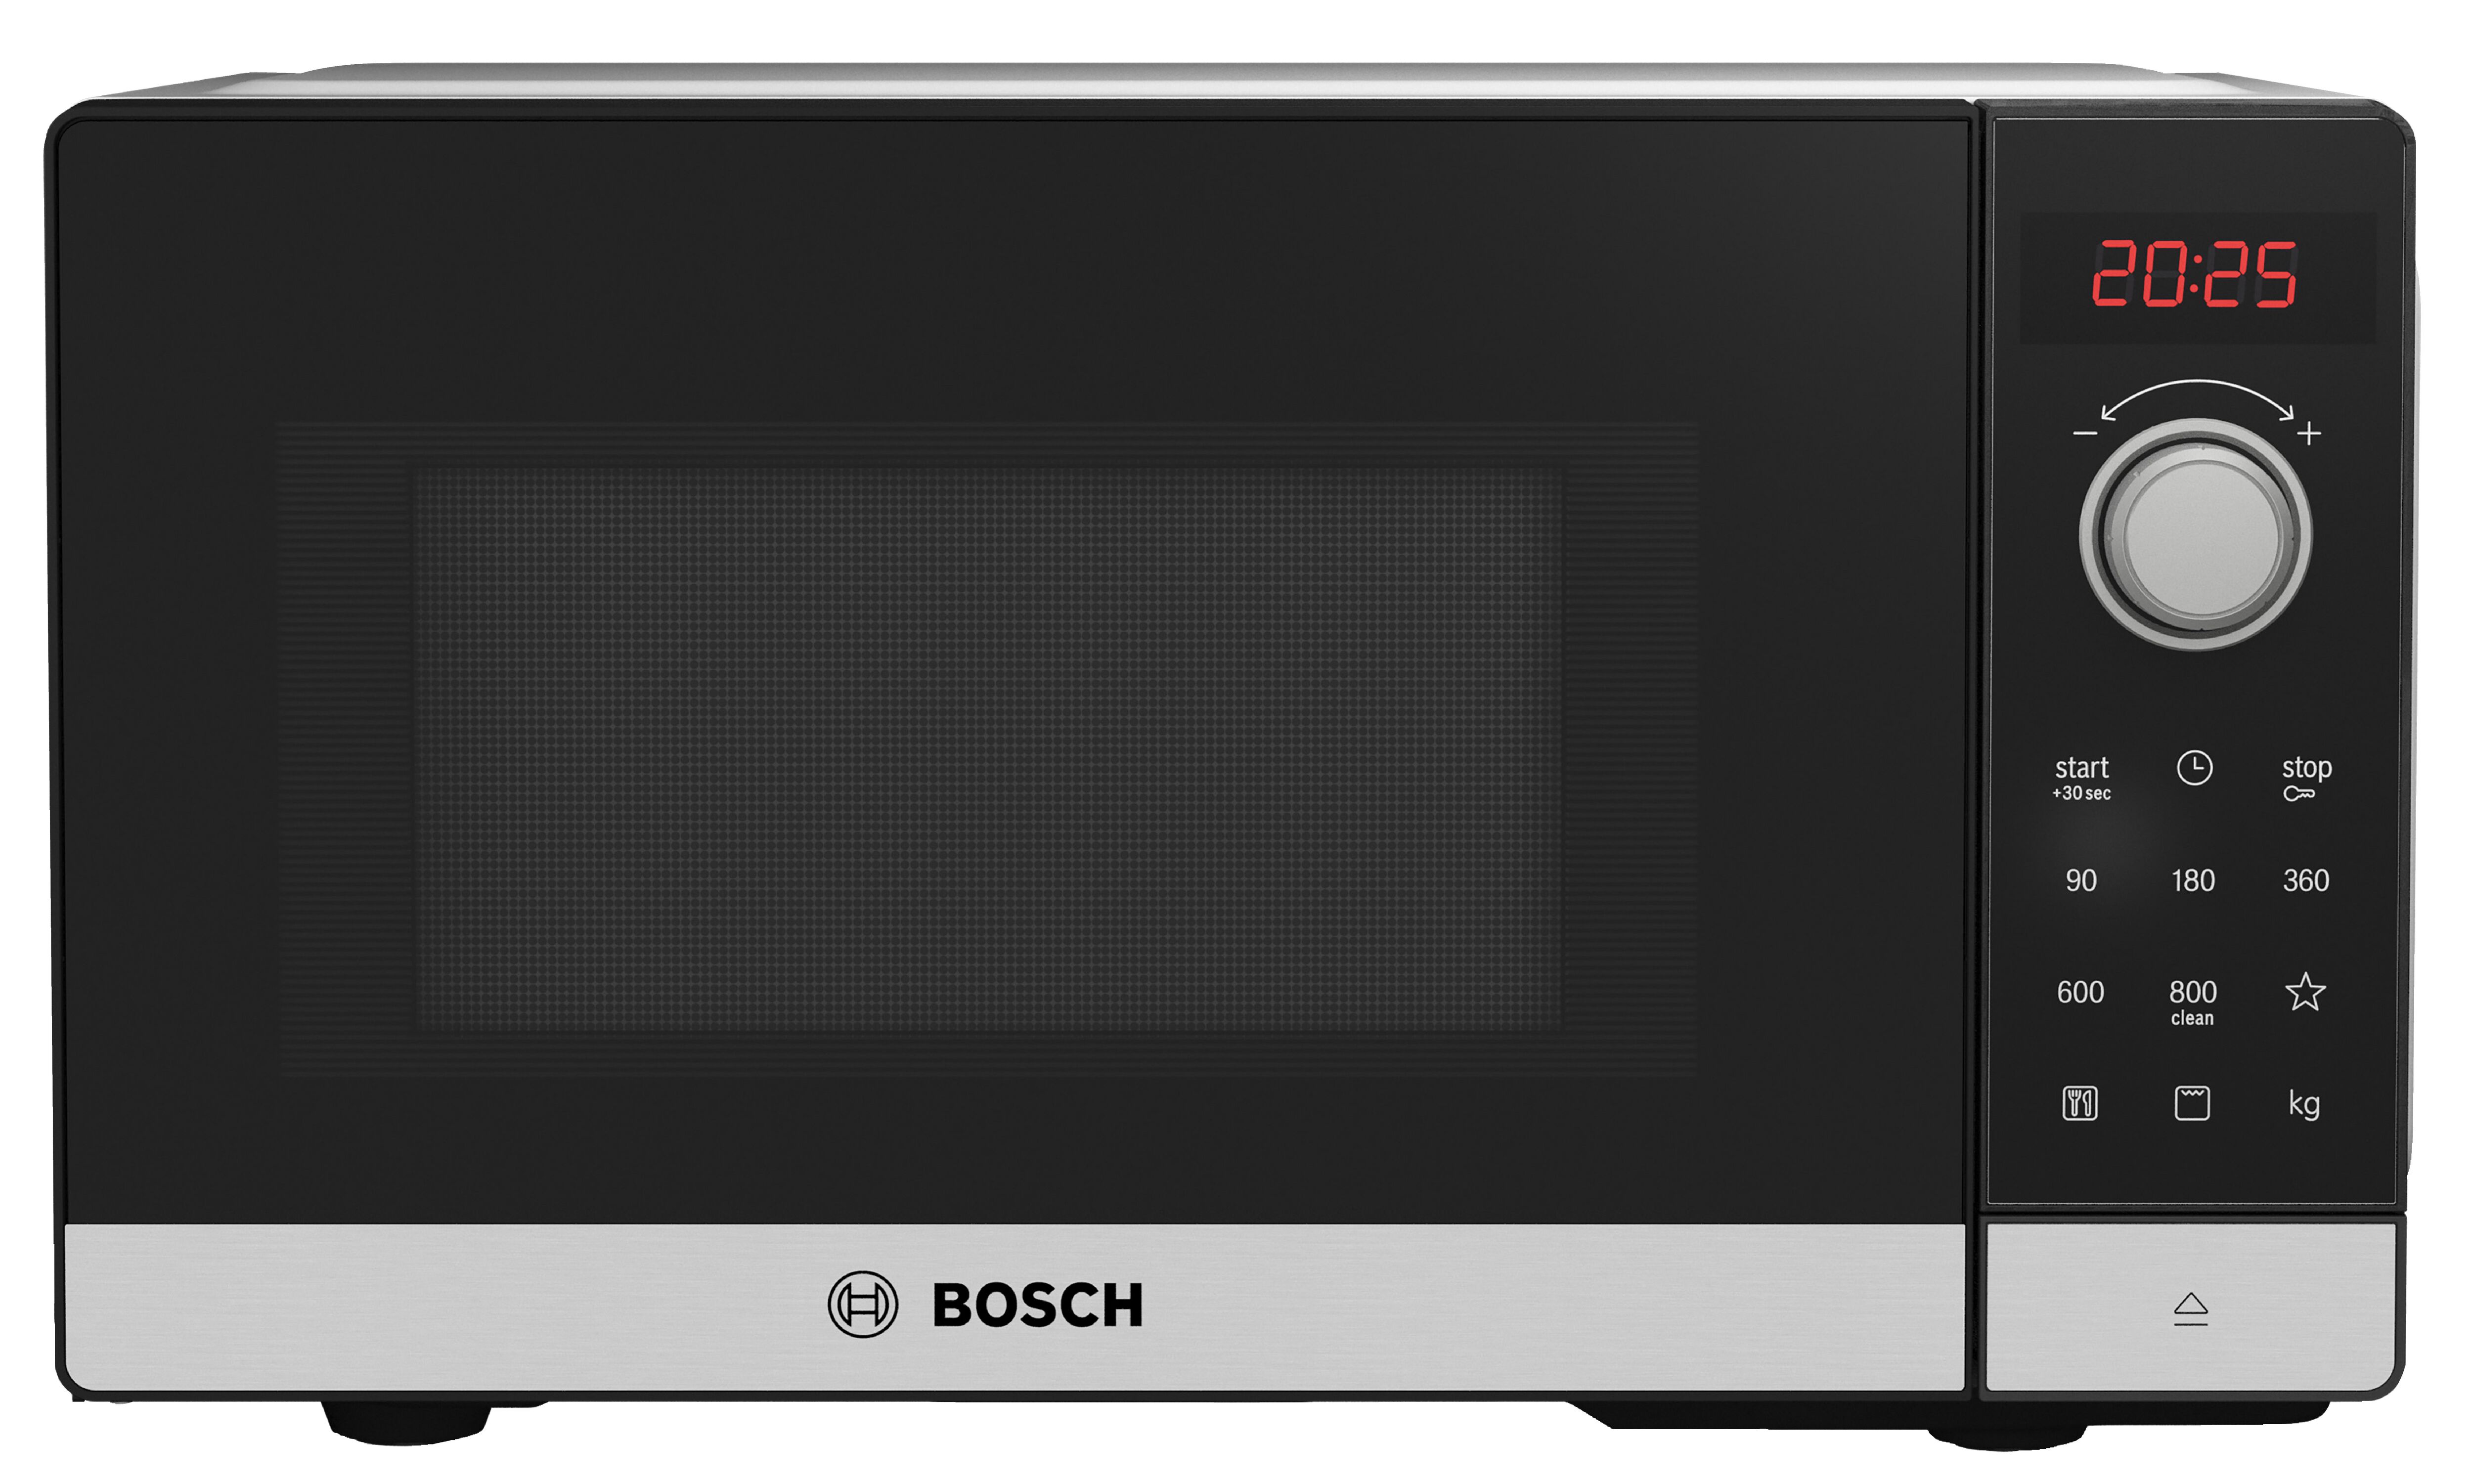 Печь бош купить. Fel023ms2 микроволновая печь Bosch. Микроволновая печь Bosch ffl020ms1. Микроволновая печь Bosch ffl020ms1, черный. Микроволновая печь с грилем Bosch serie|2 fel023ms2.